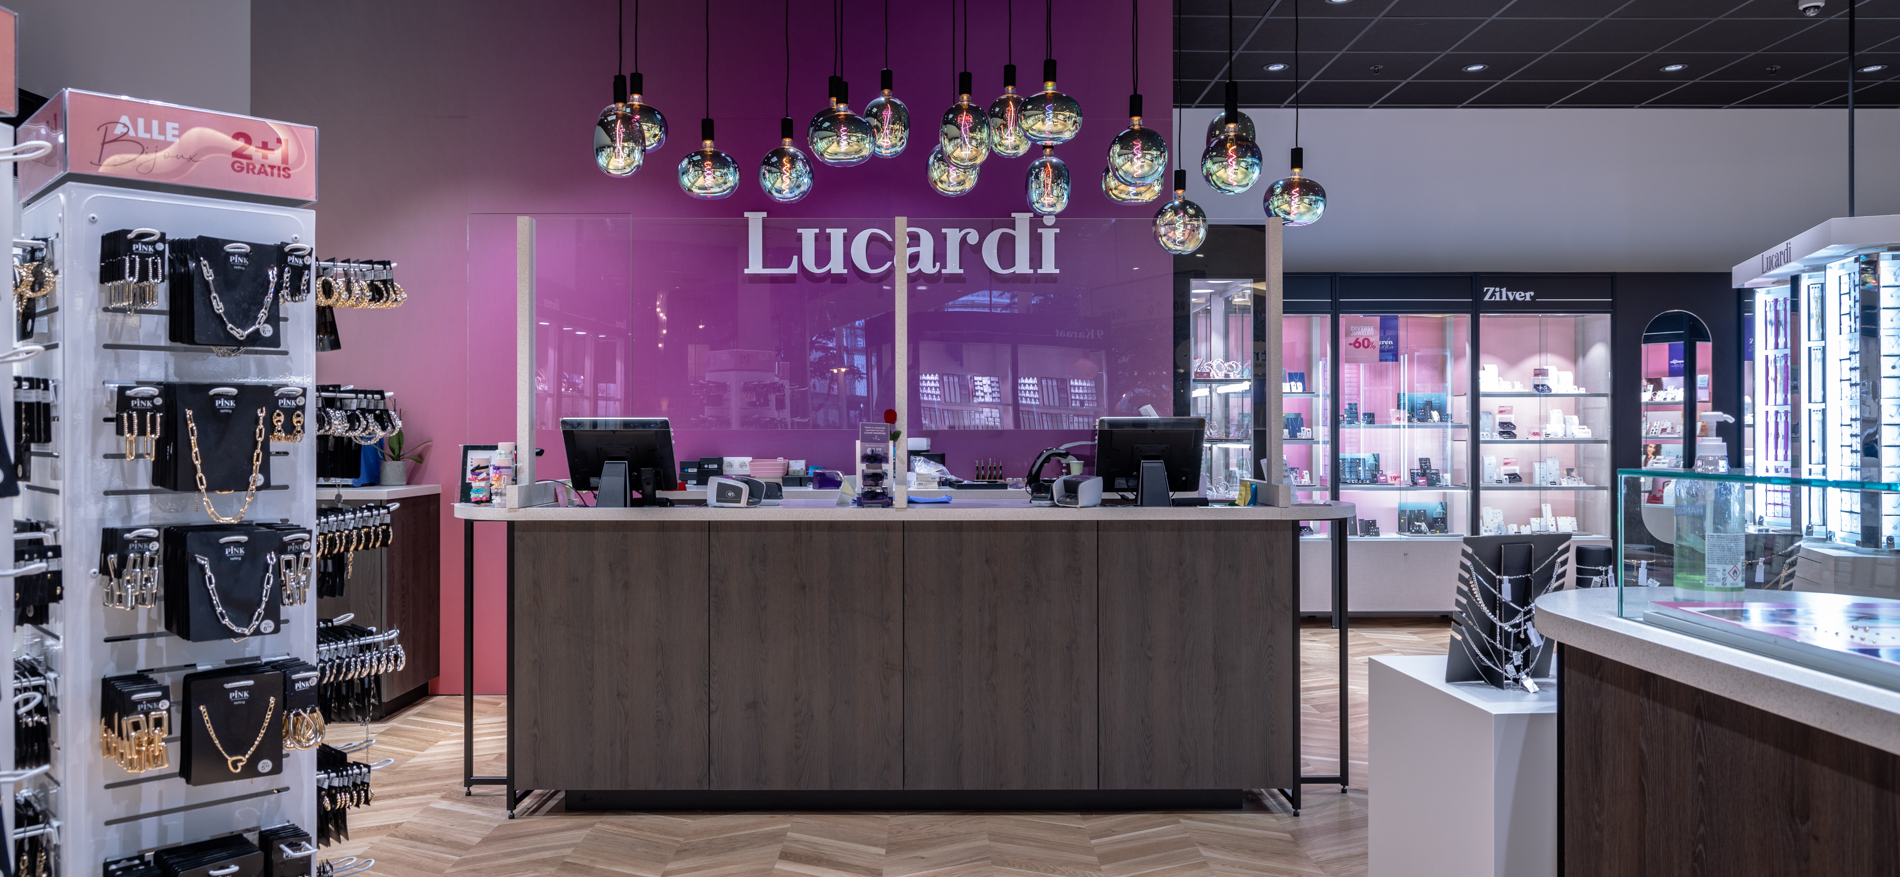 Lucardi Juweliers | Sint-Niklaas (BE) - Juweliers